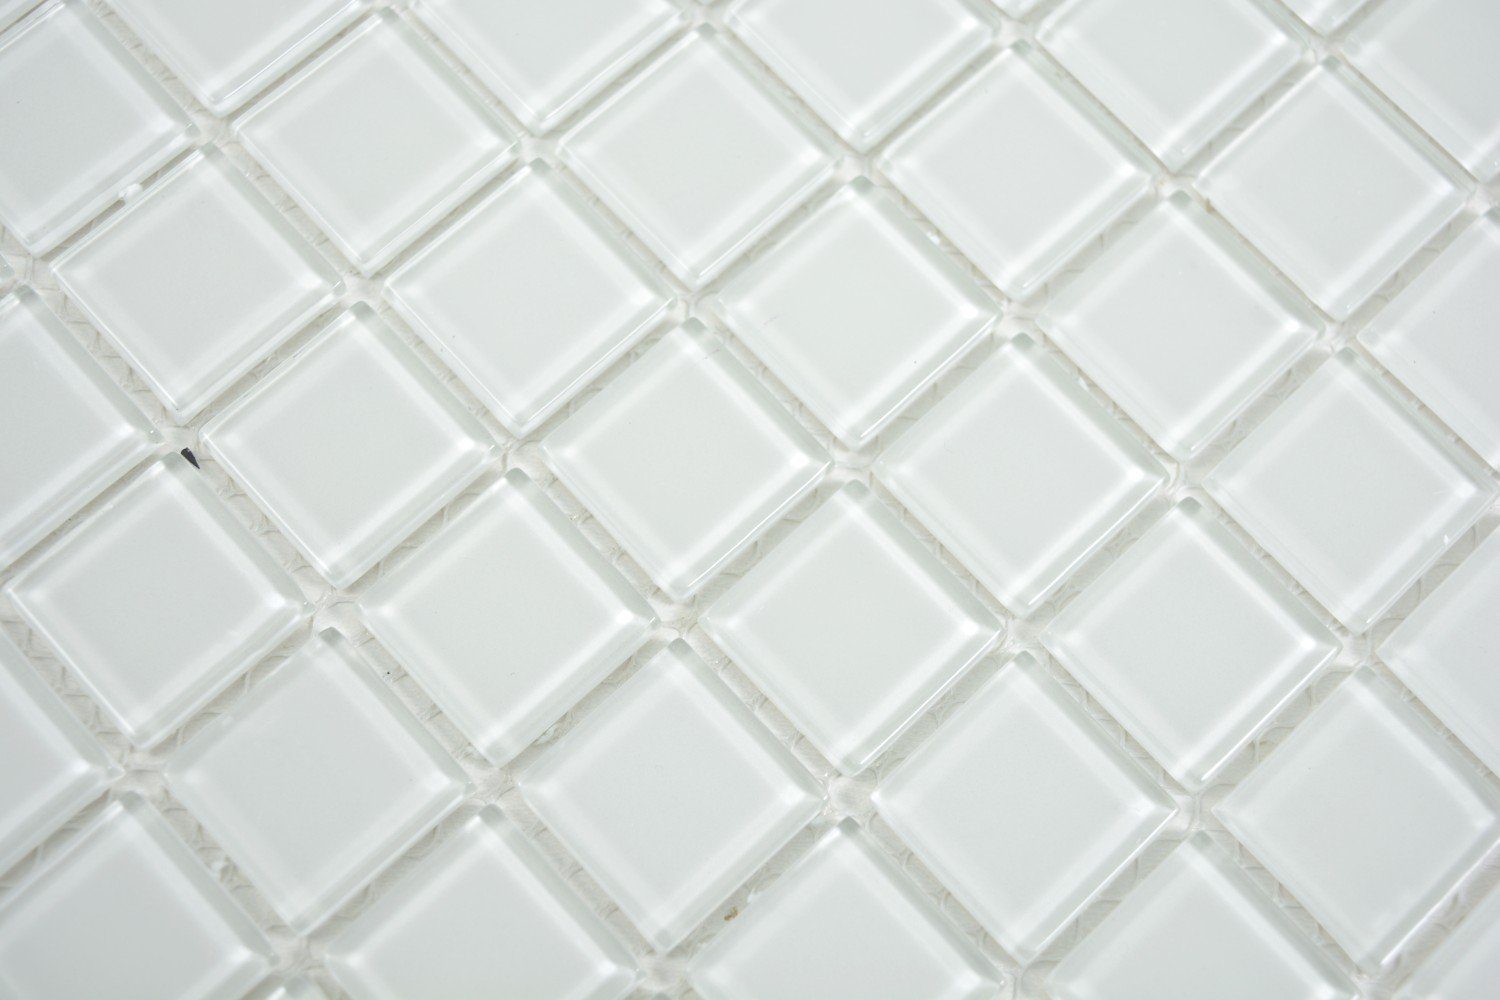 Mosani Mosaikfliesen glänzend 10 / weiß Mosaikfliesen Crystal Glasmosaik Matten